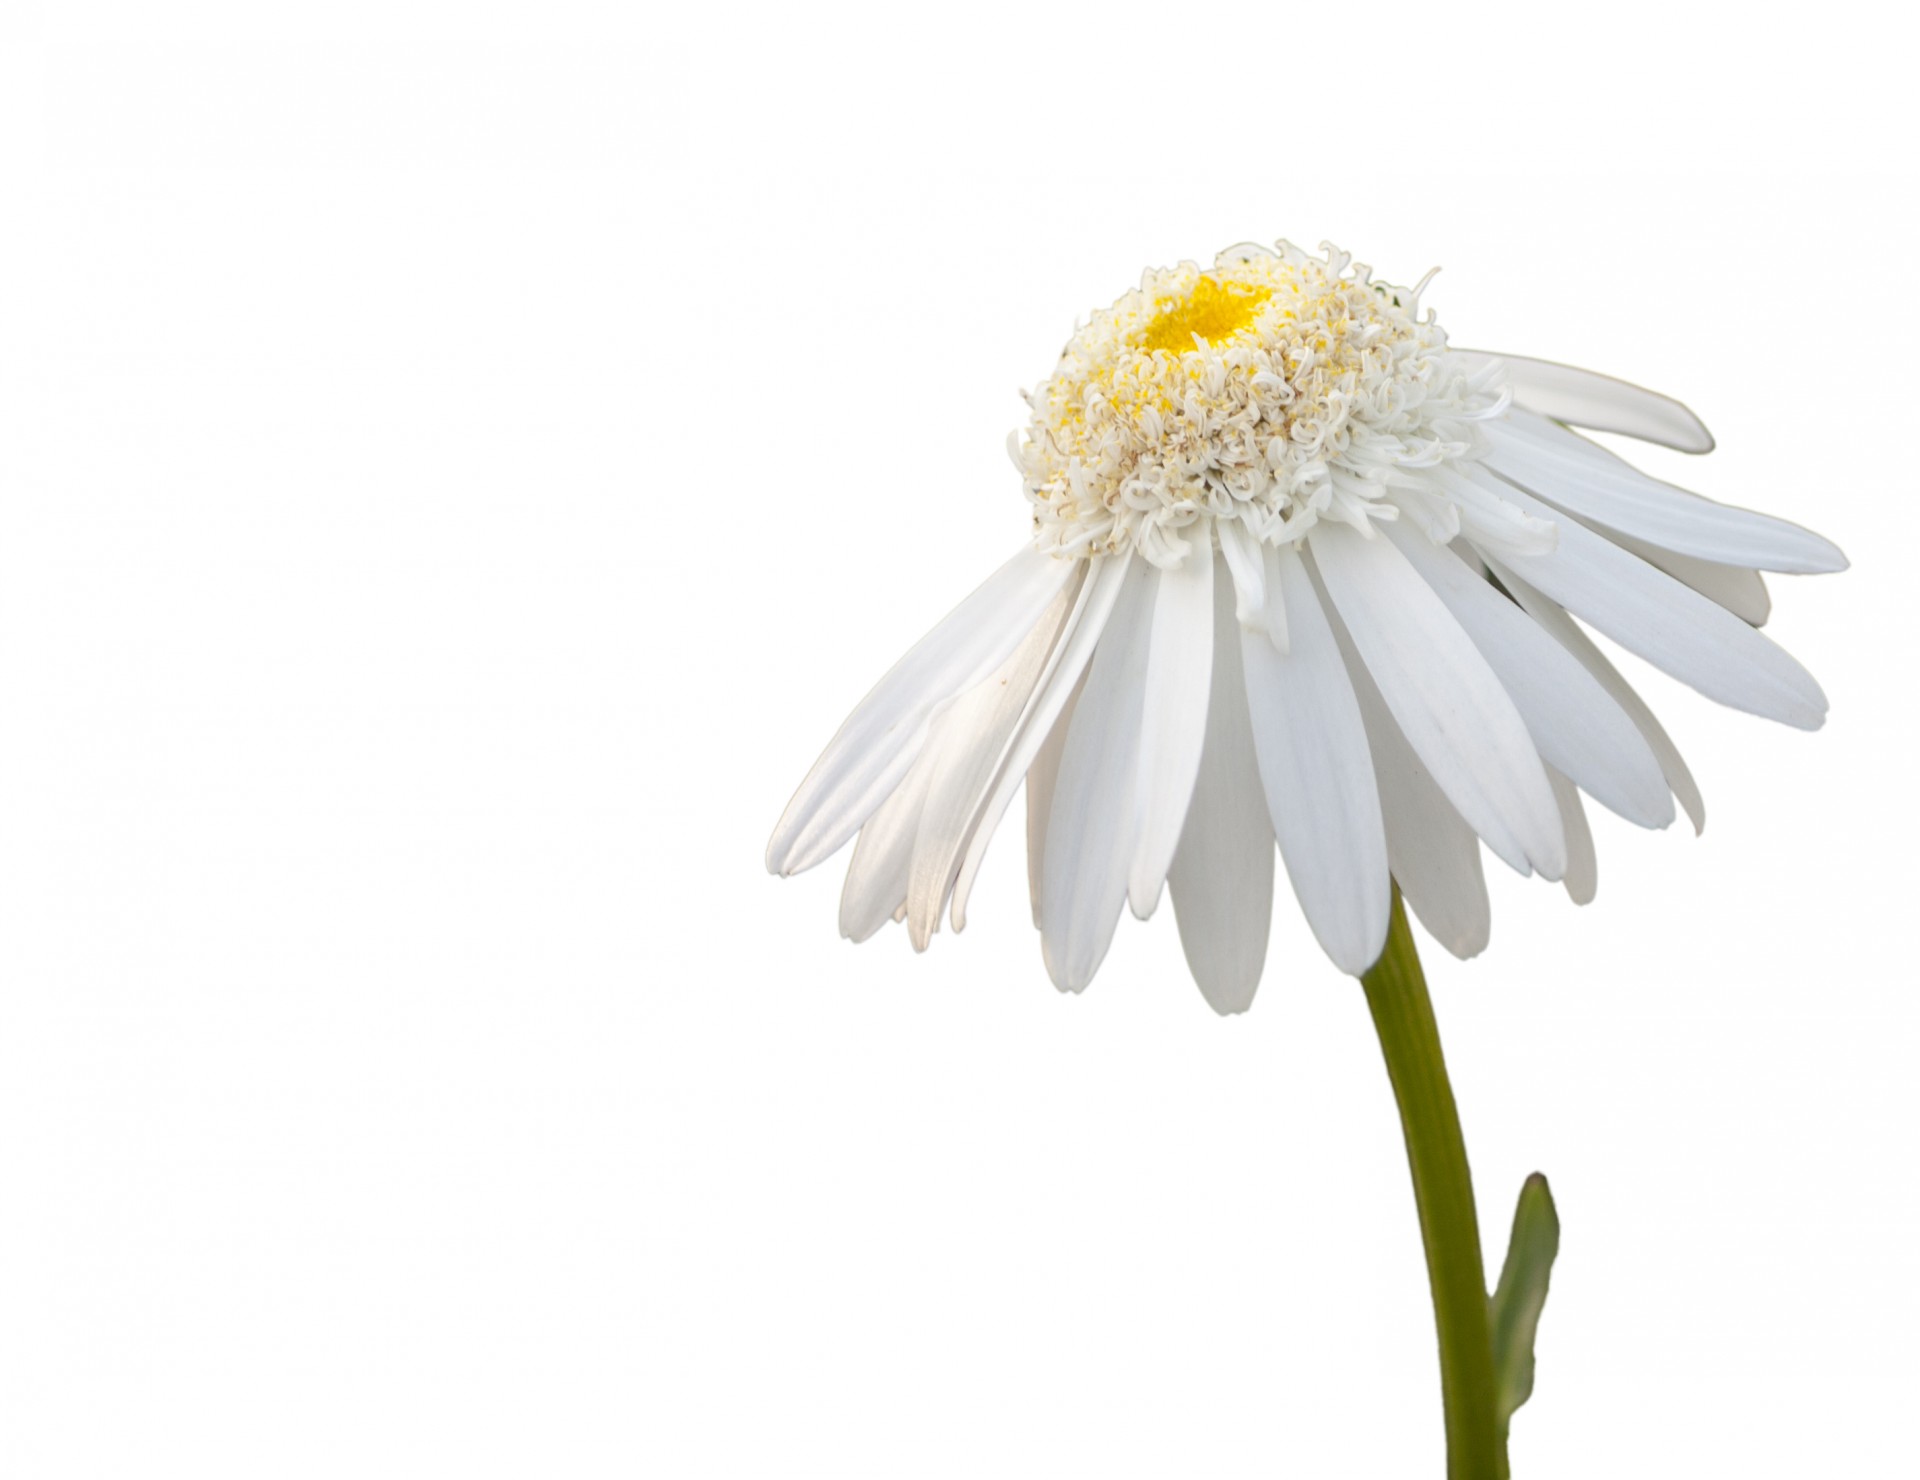 Daisy Flower Witte Achtergrond